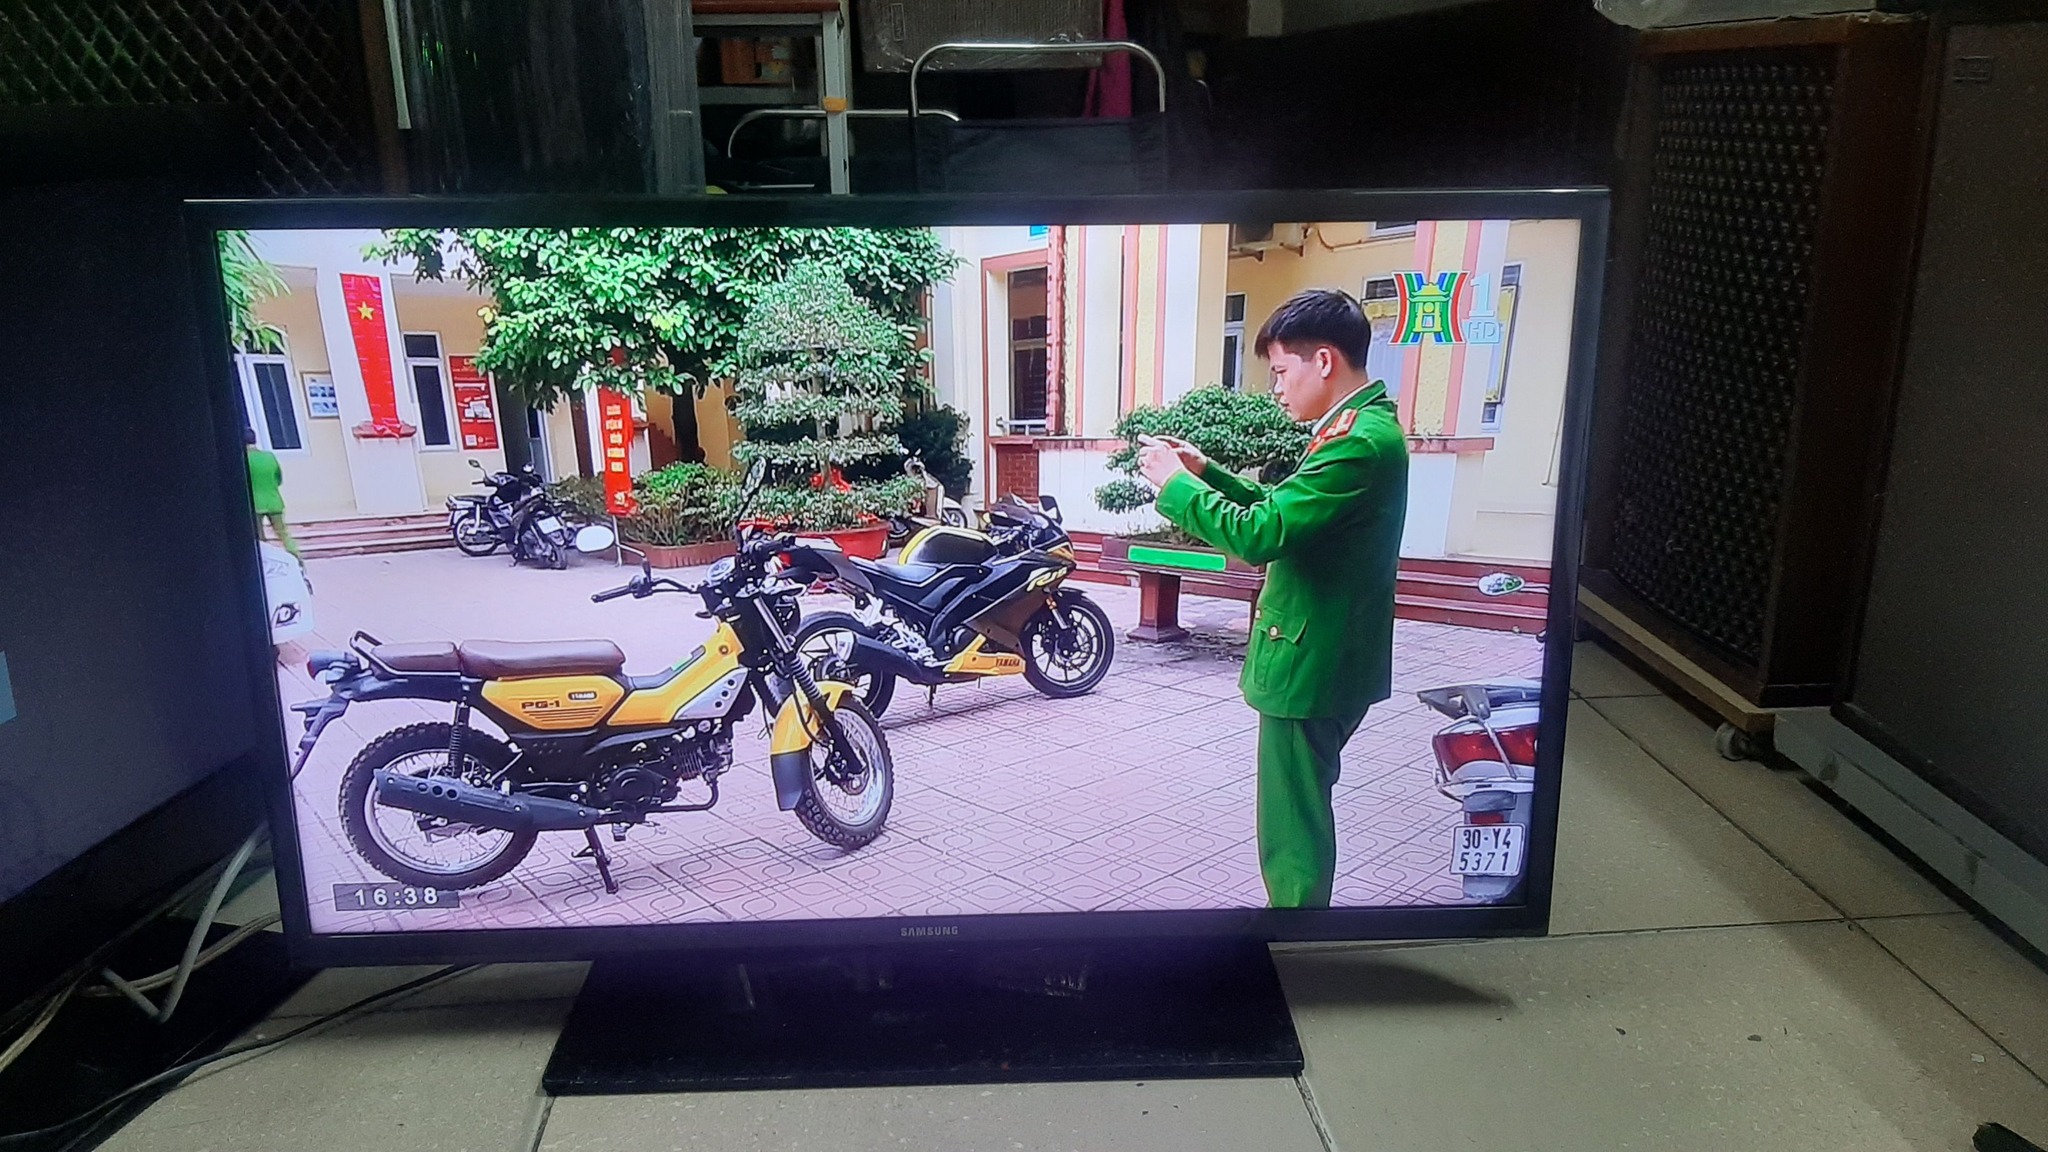 Thu mua tivi cũ hỏng Hà Nội, thanh lý tại nhà giá cao nhất